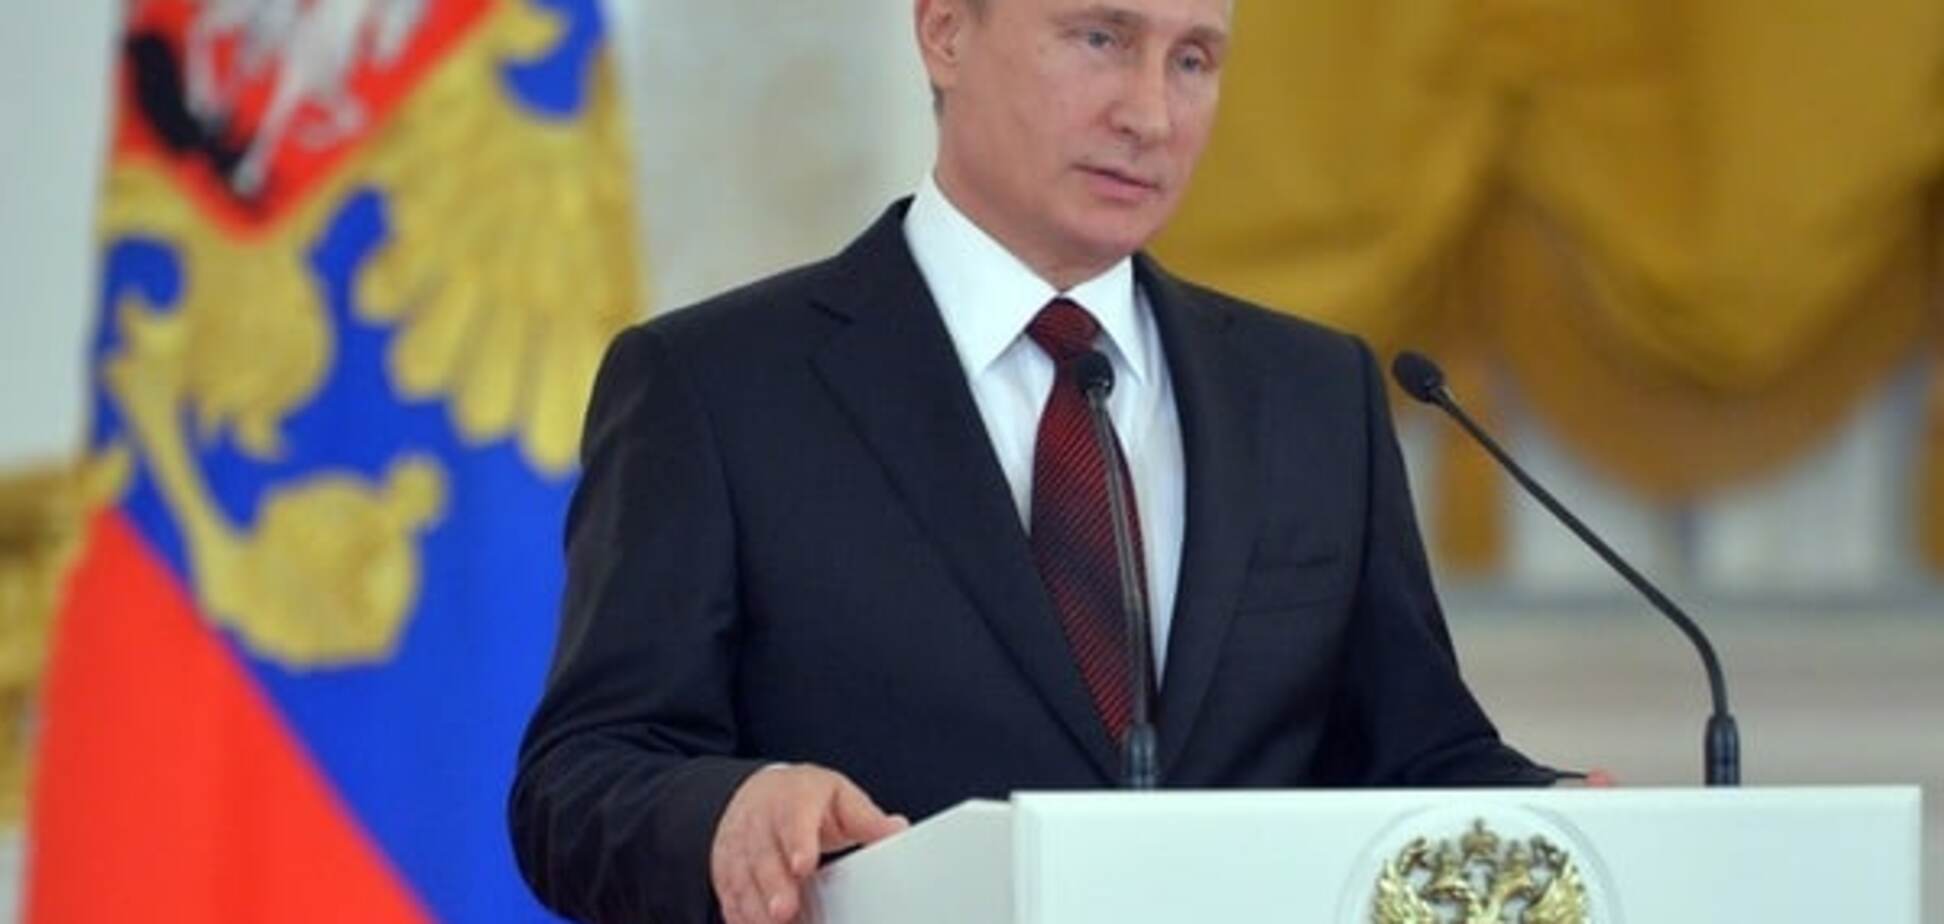 Самый честный – Путин: в сети развенчали очередной фейк российской пропаганды